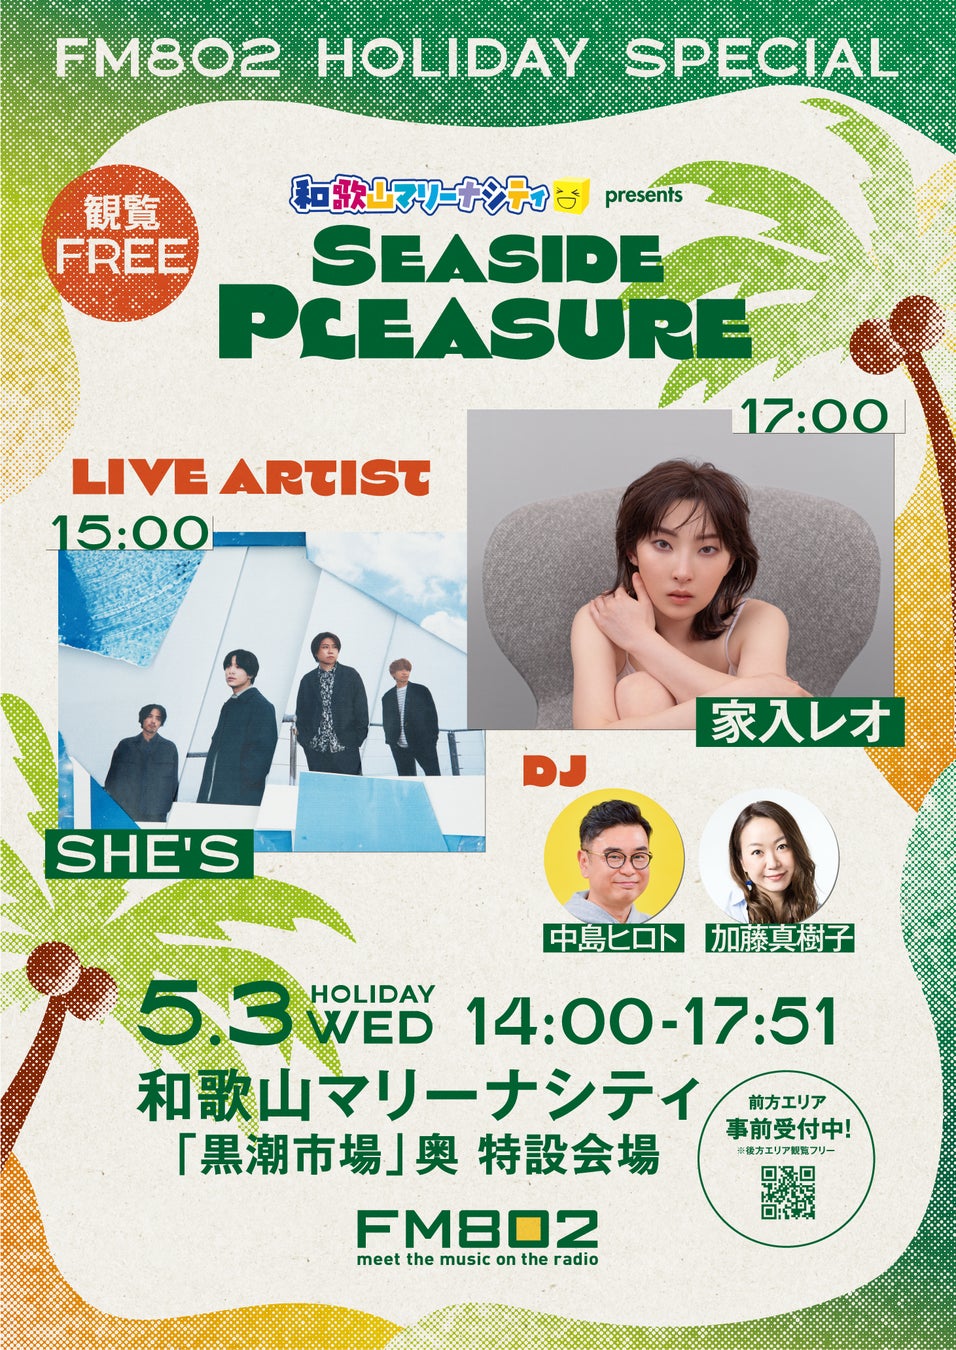 和歌山マリーナシティからの公開生放送で、SHE’S、家入レオがライブを披露！今年は、ゴールデンウィーク真っ只中にも開催決定。